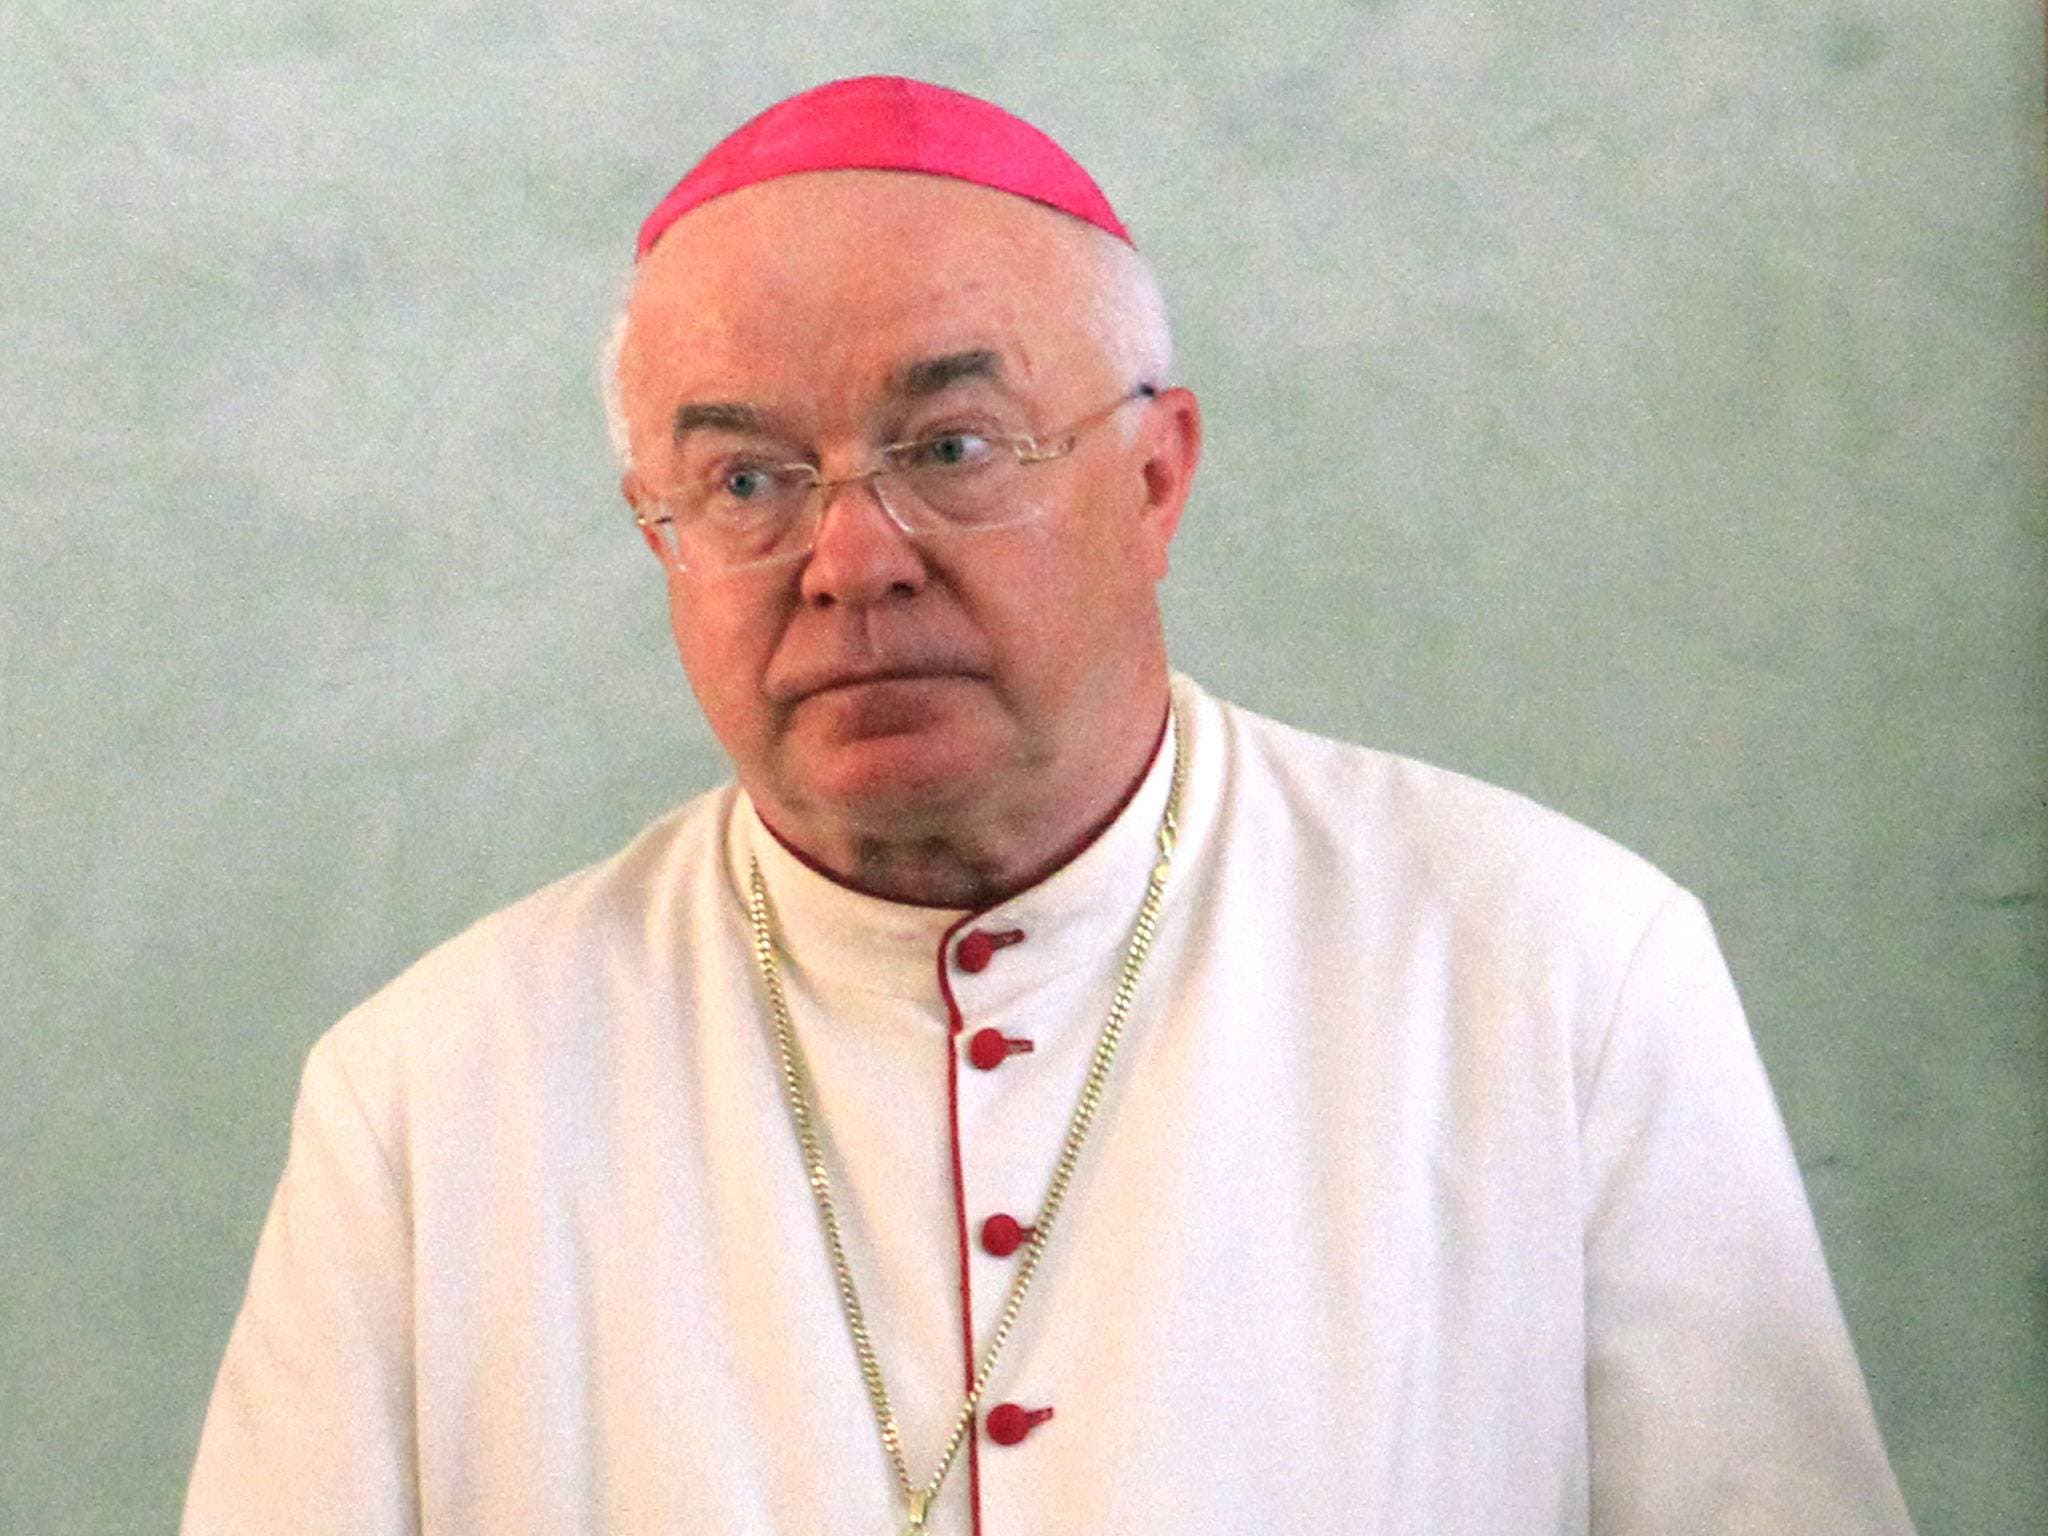 Con la muerte de Wesolowski queda suspendido primer juicio por pederastia en el Vaticano